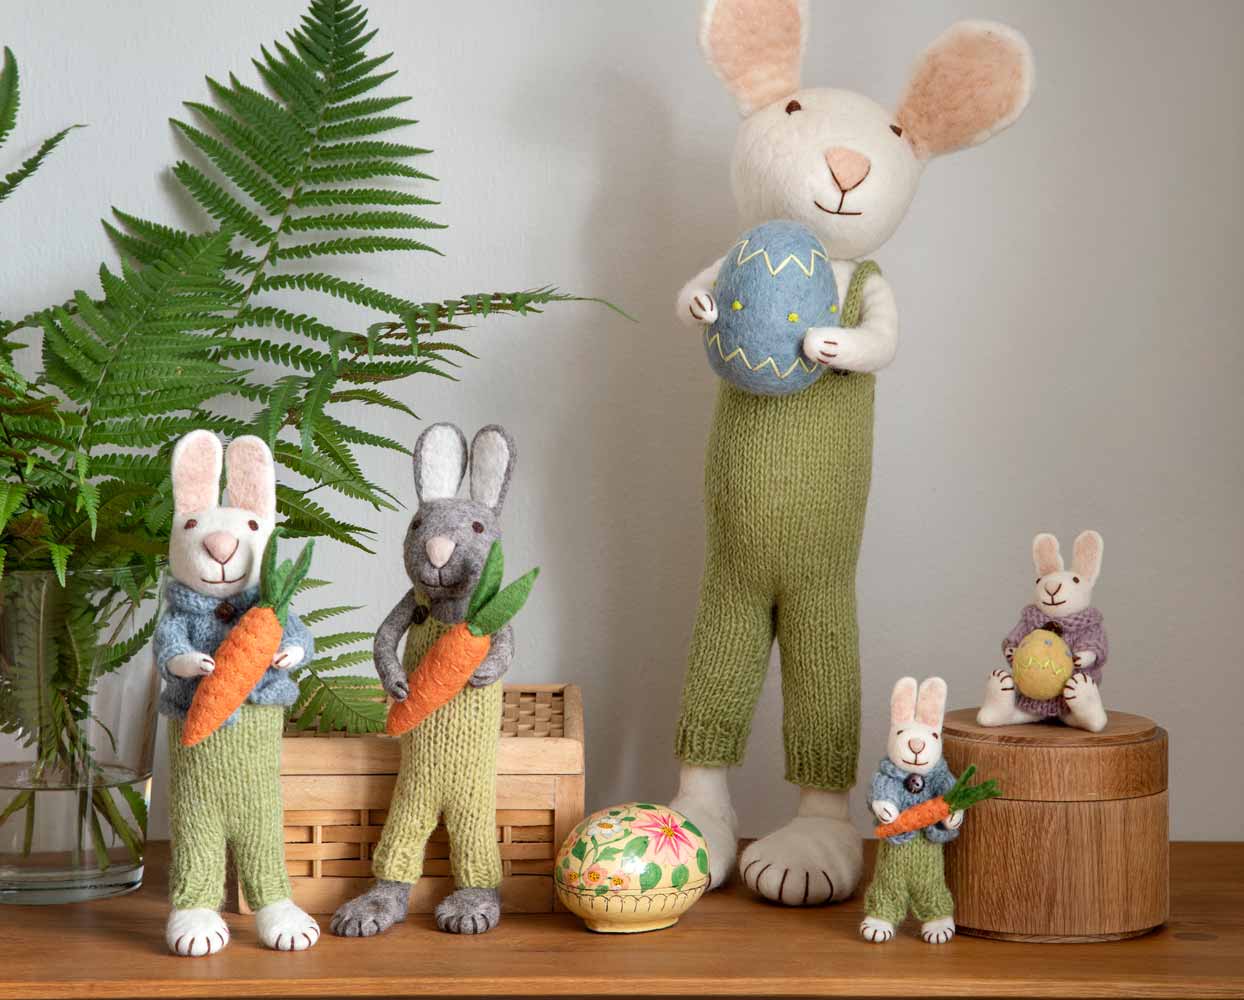 Eine Sammlung von Kaninchenfiguren in grünen Overalls, einige mit Karotten und Ostereiern, ausgestellt auf einem Holztisch neben einer Farnpflanze.